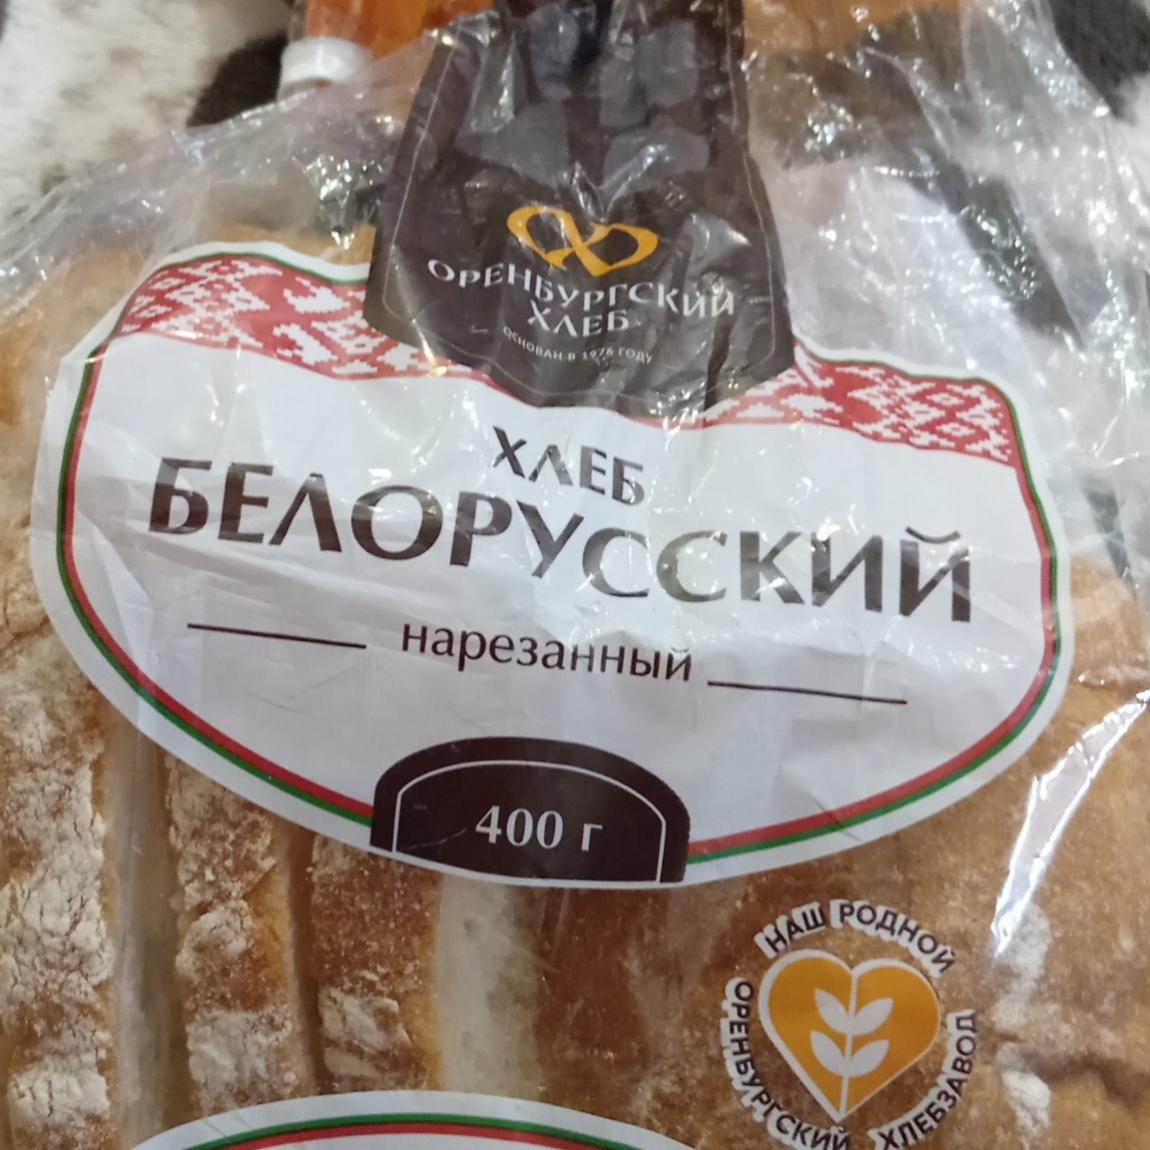 Фото - Хлеб белорусский подовый нарезанный Оренбургский хлеб